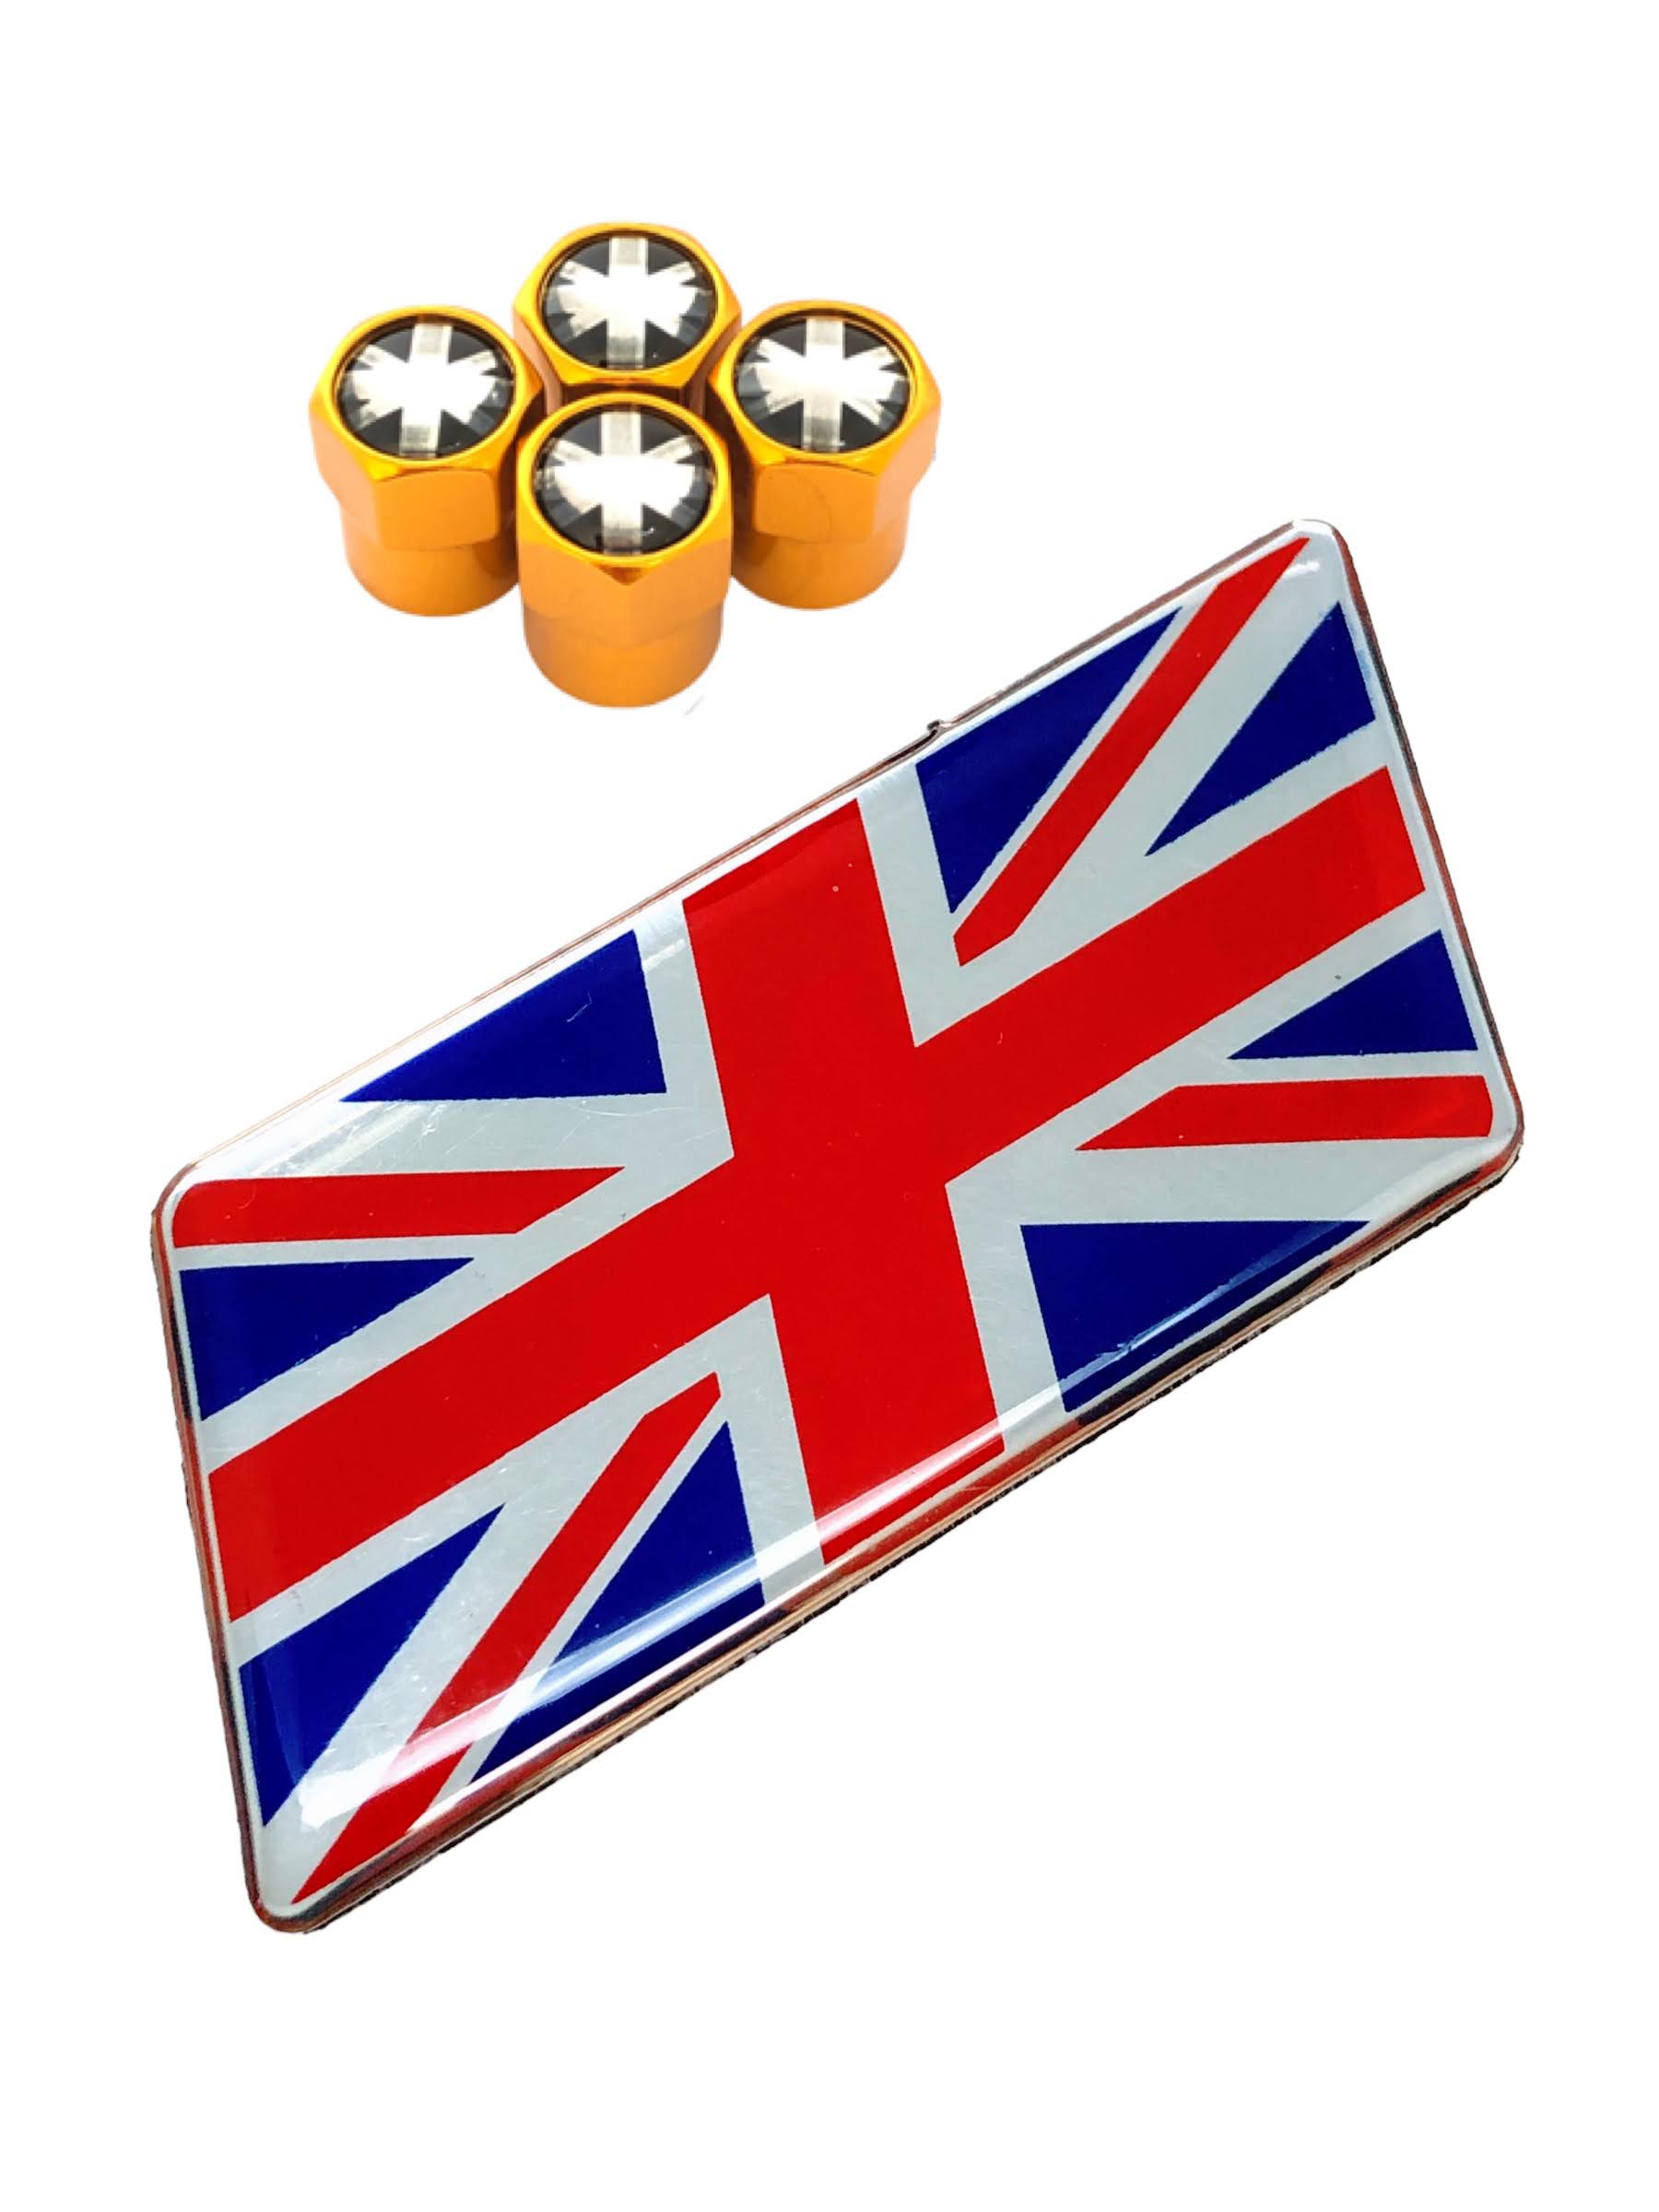 J イギリス 国旗 選べるバルブキャップカラー エンブレム ステッカー バルブキャップ フェンダー ...